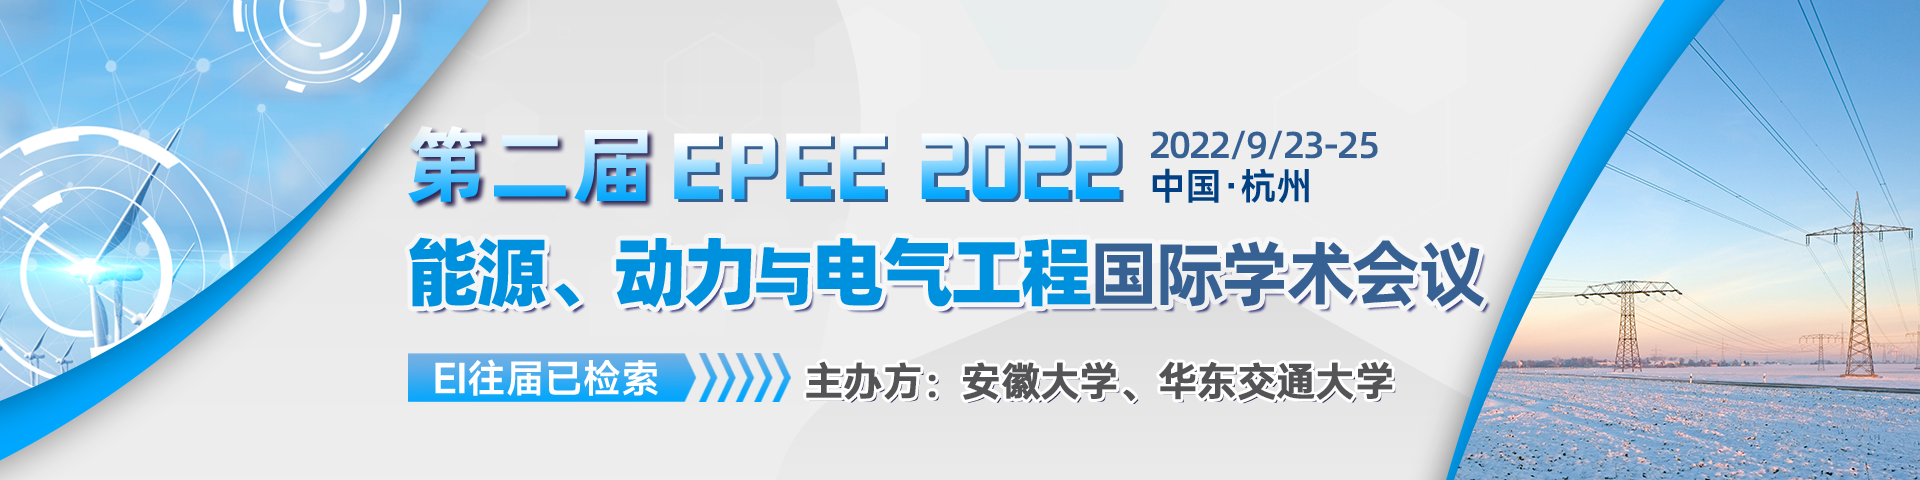 9月-杭州-EPEE-艾思平台上线平台1920x480.png